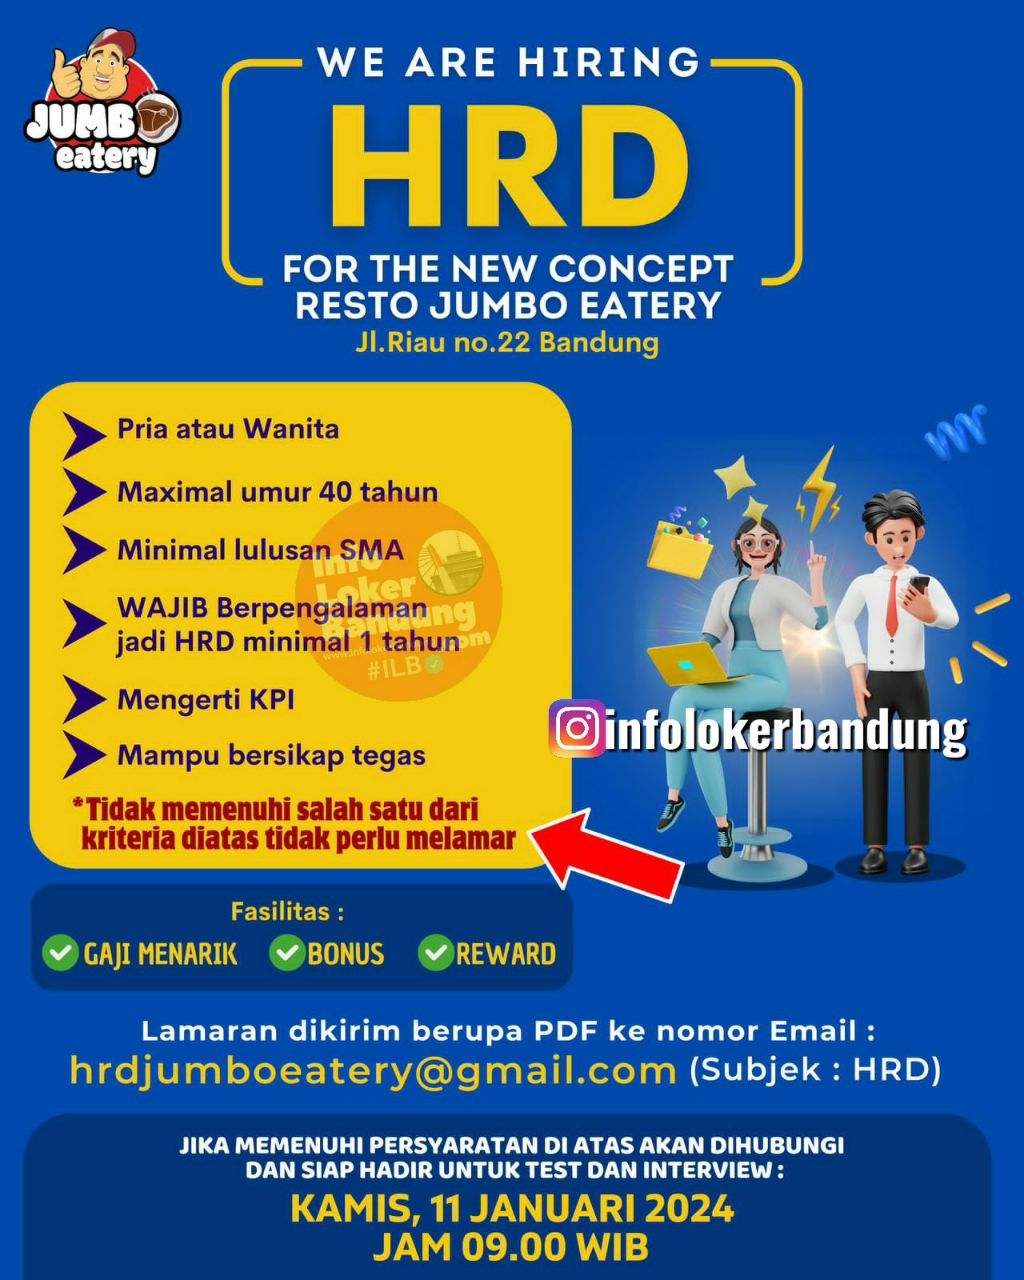 Lowongan Krja HRD Jumbo Eatery Bandung 2024